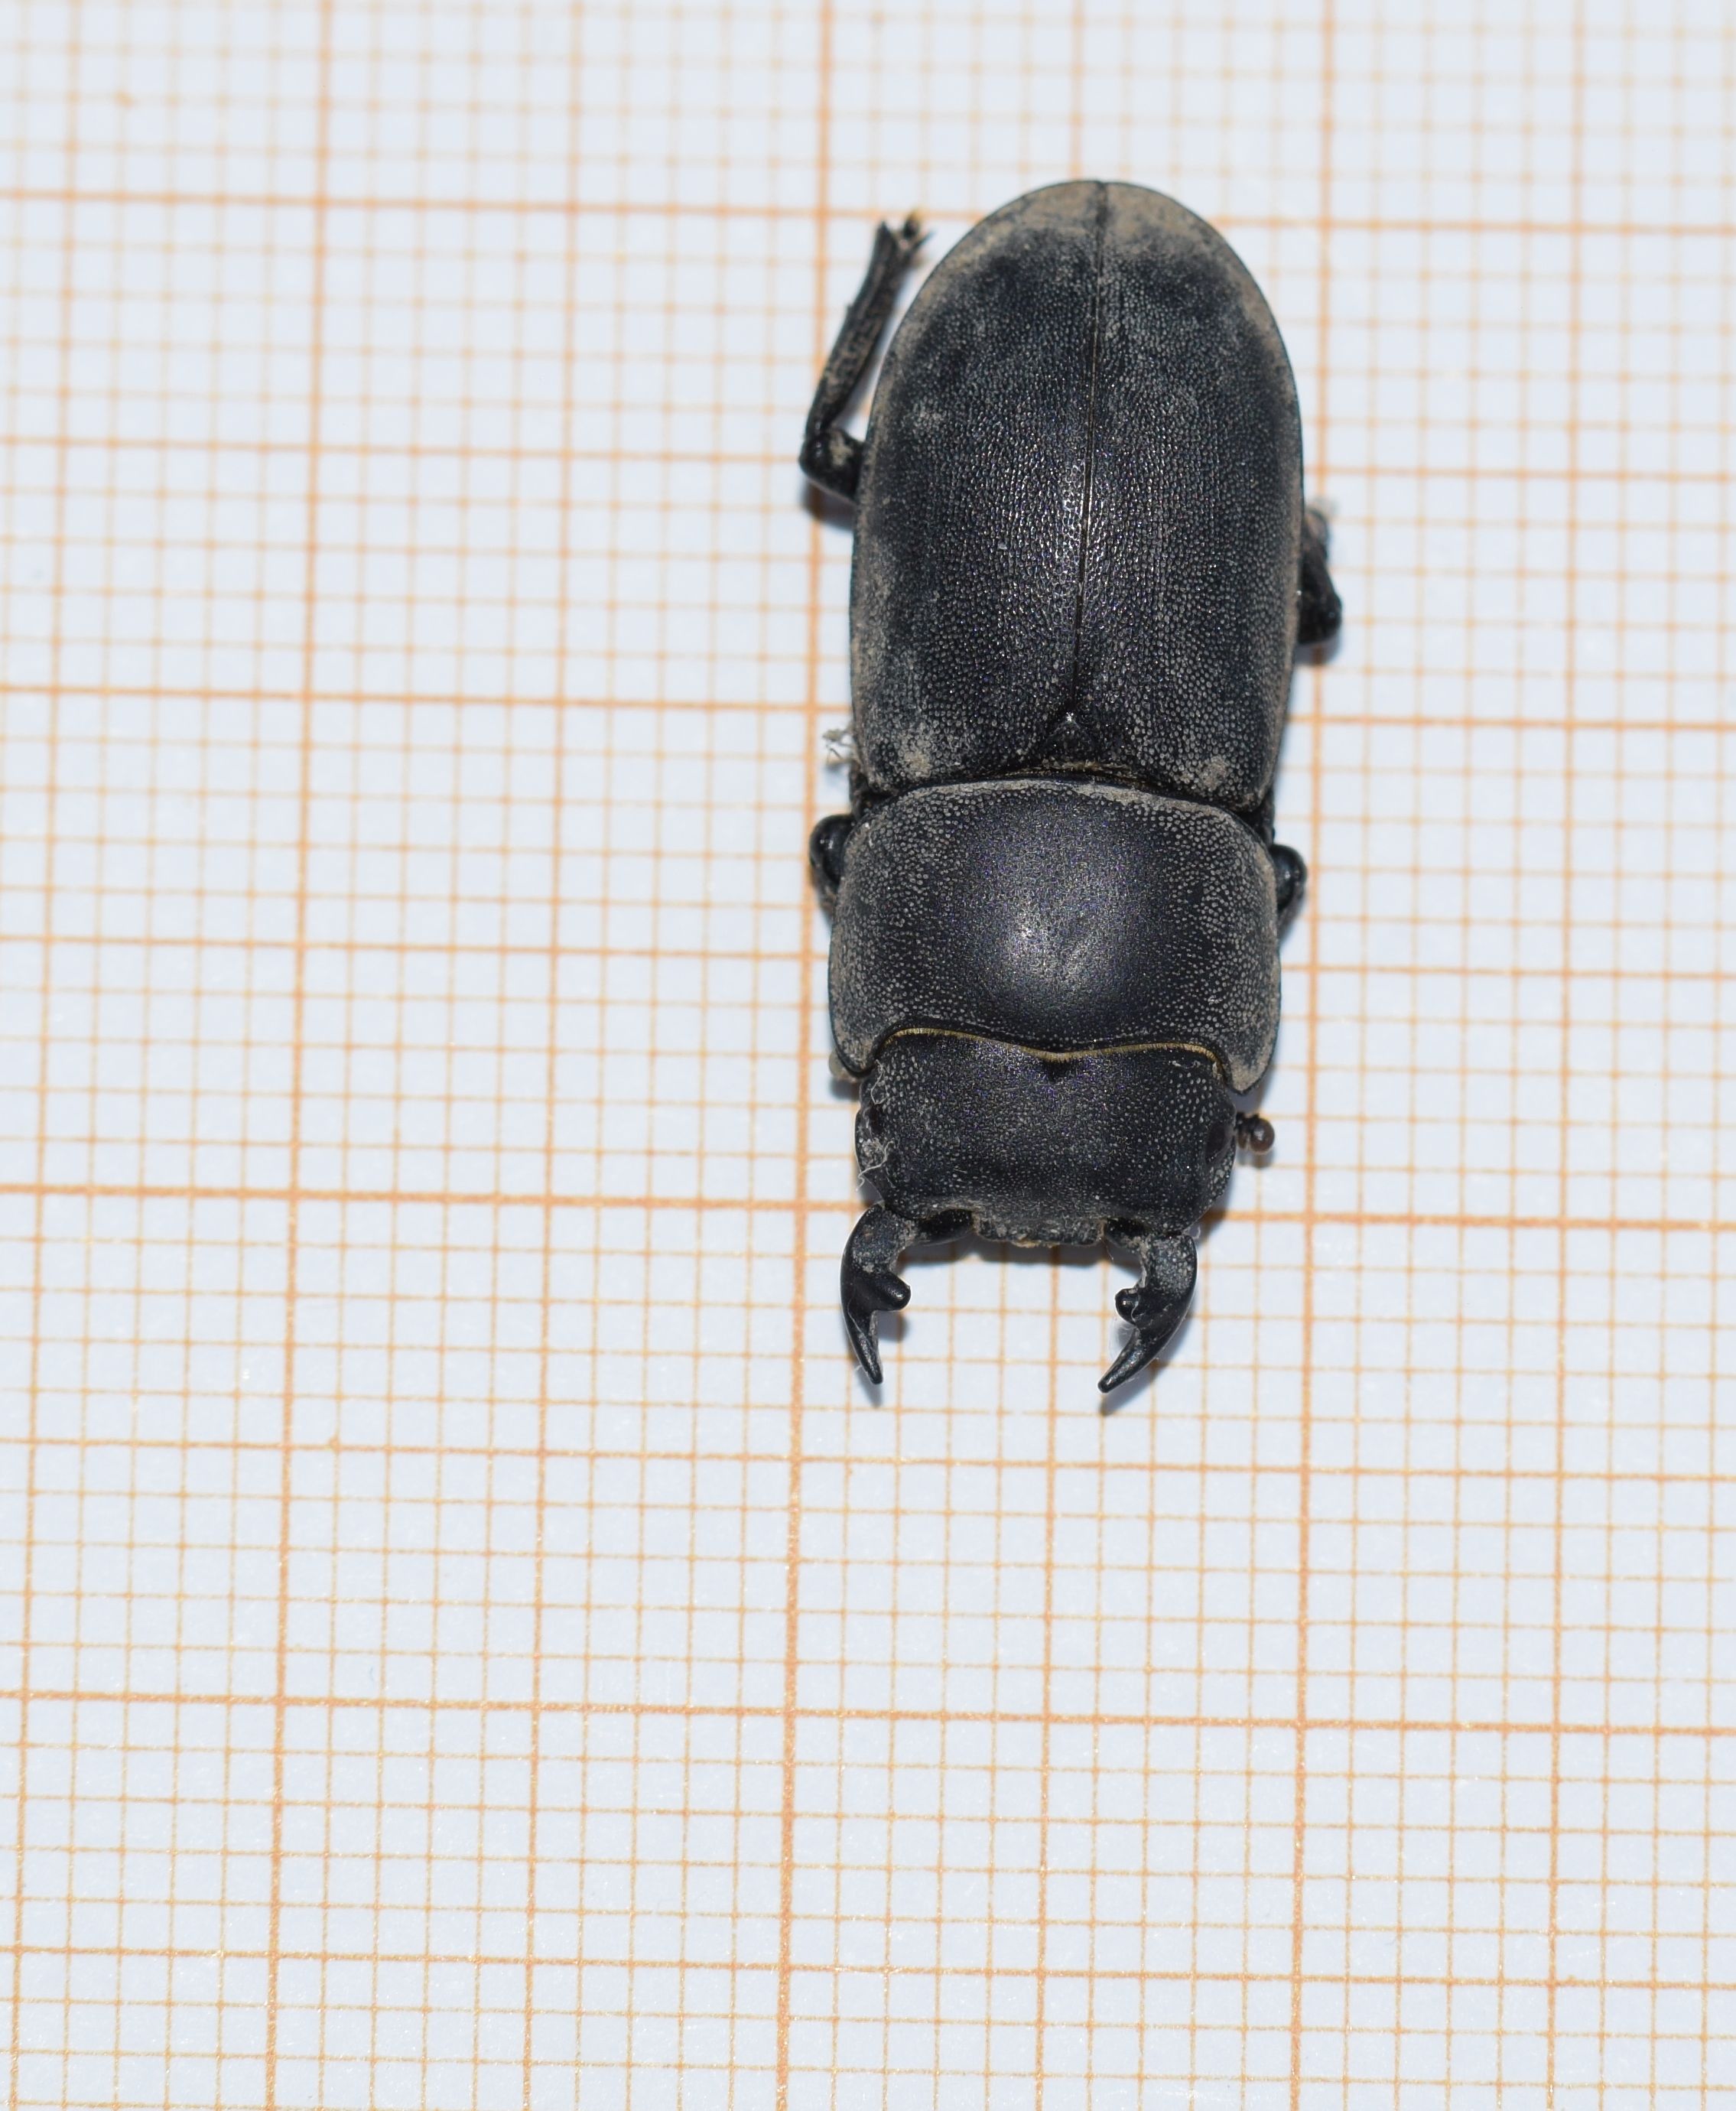 [Dorcus parallelipipedus] Lucanidae ? 06-08-12